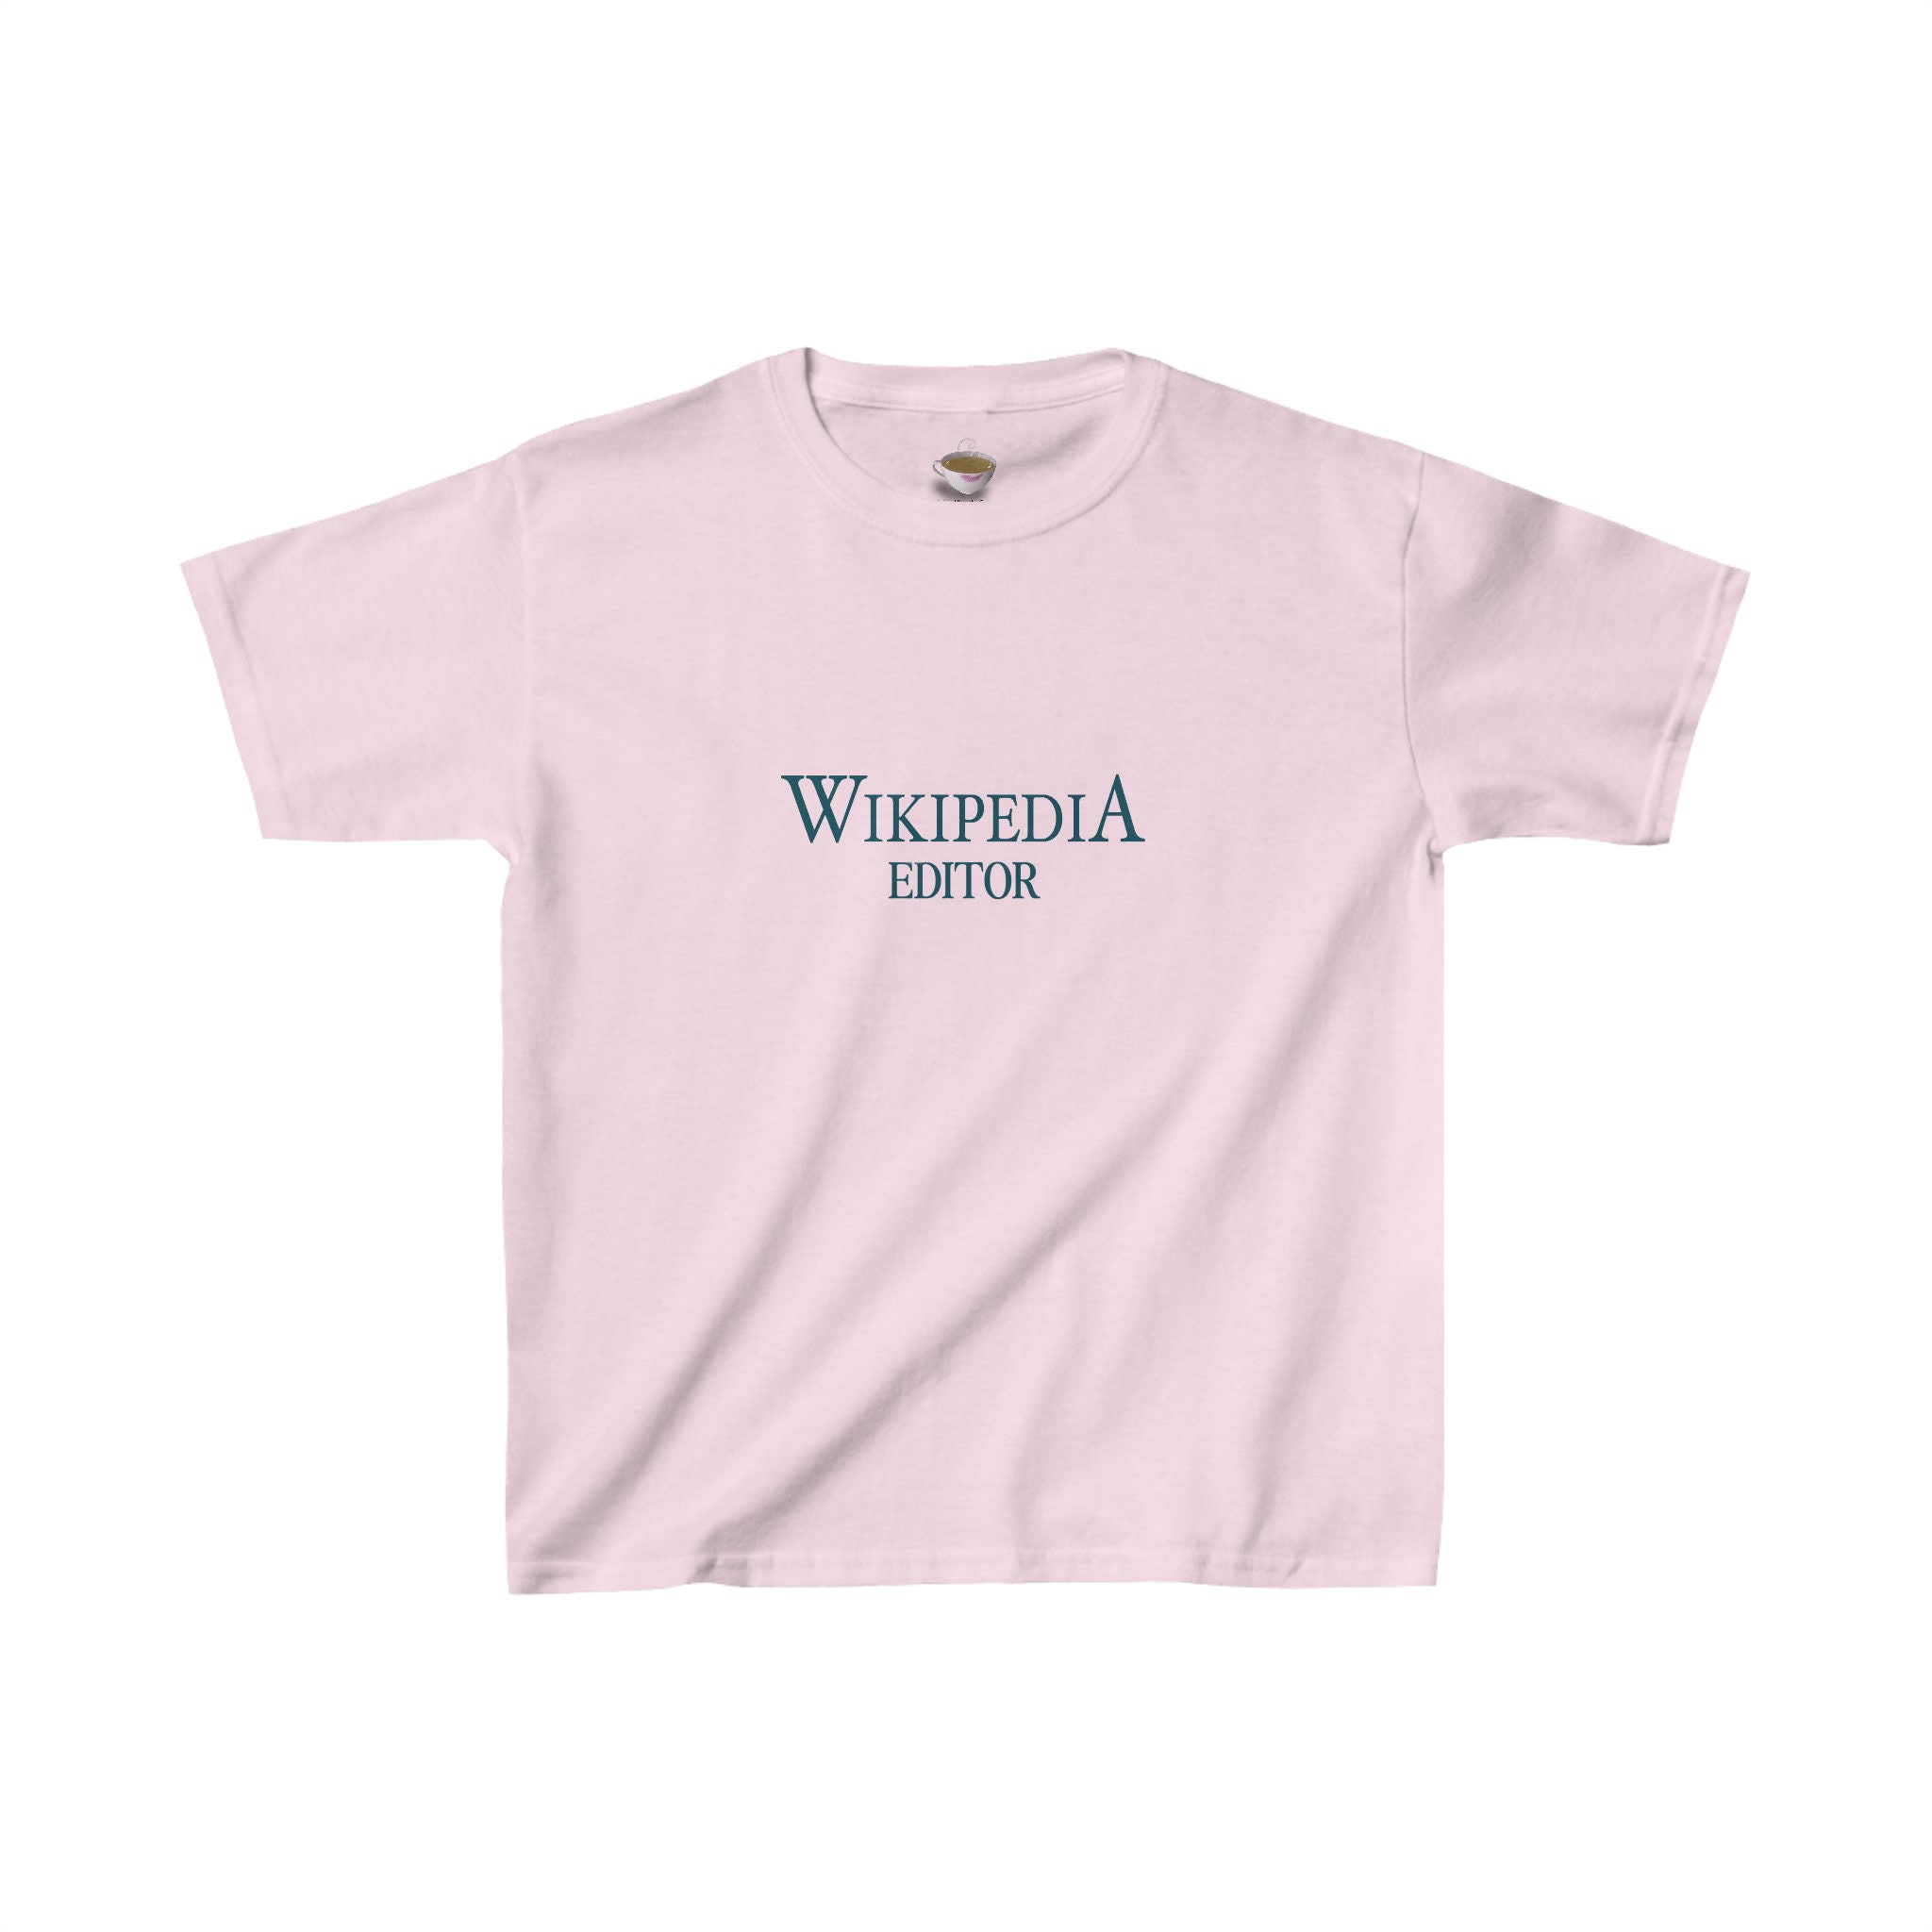 t-shirt - Wikidata